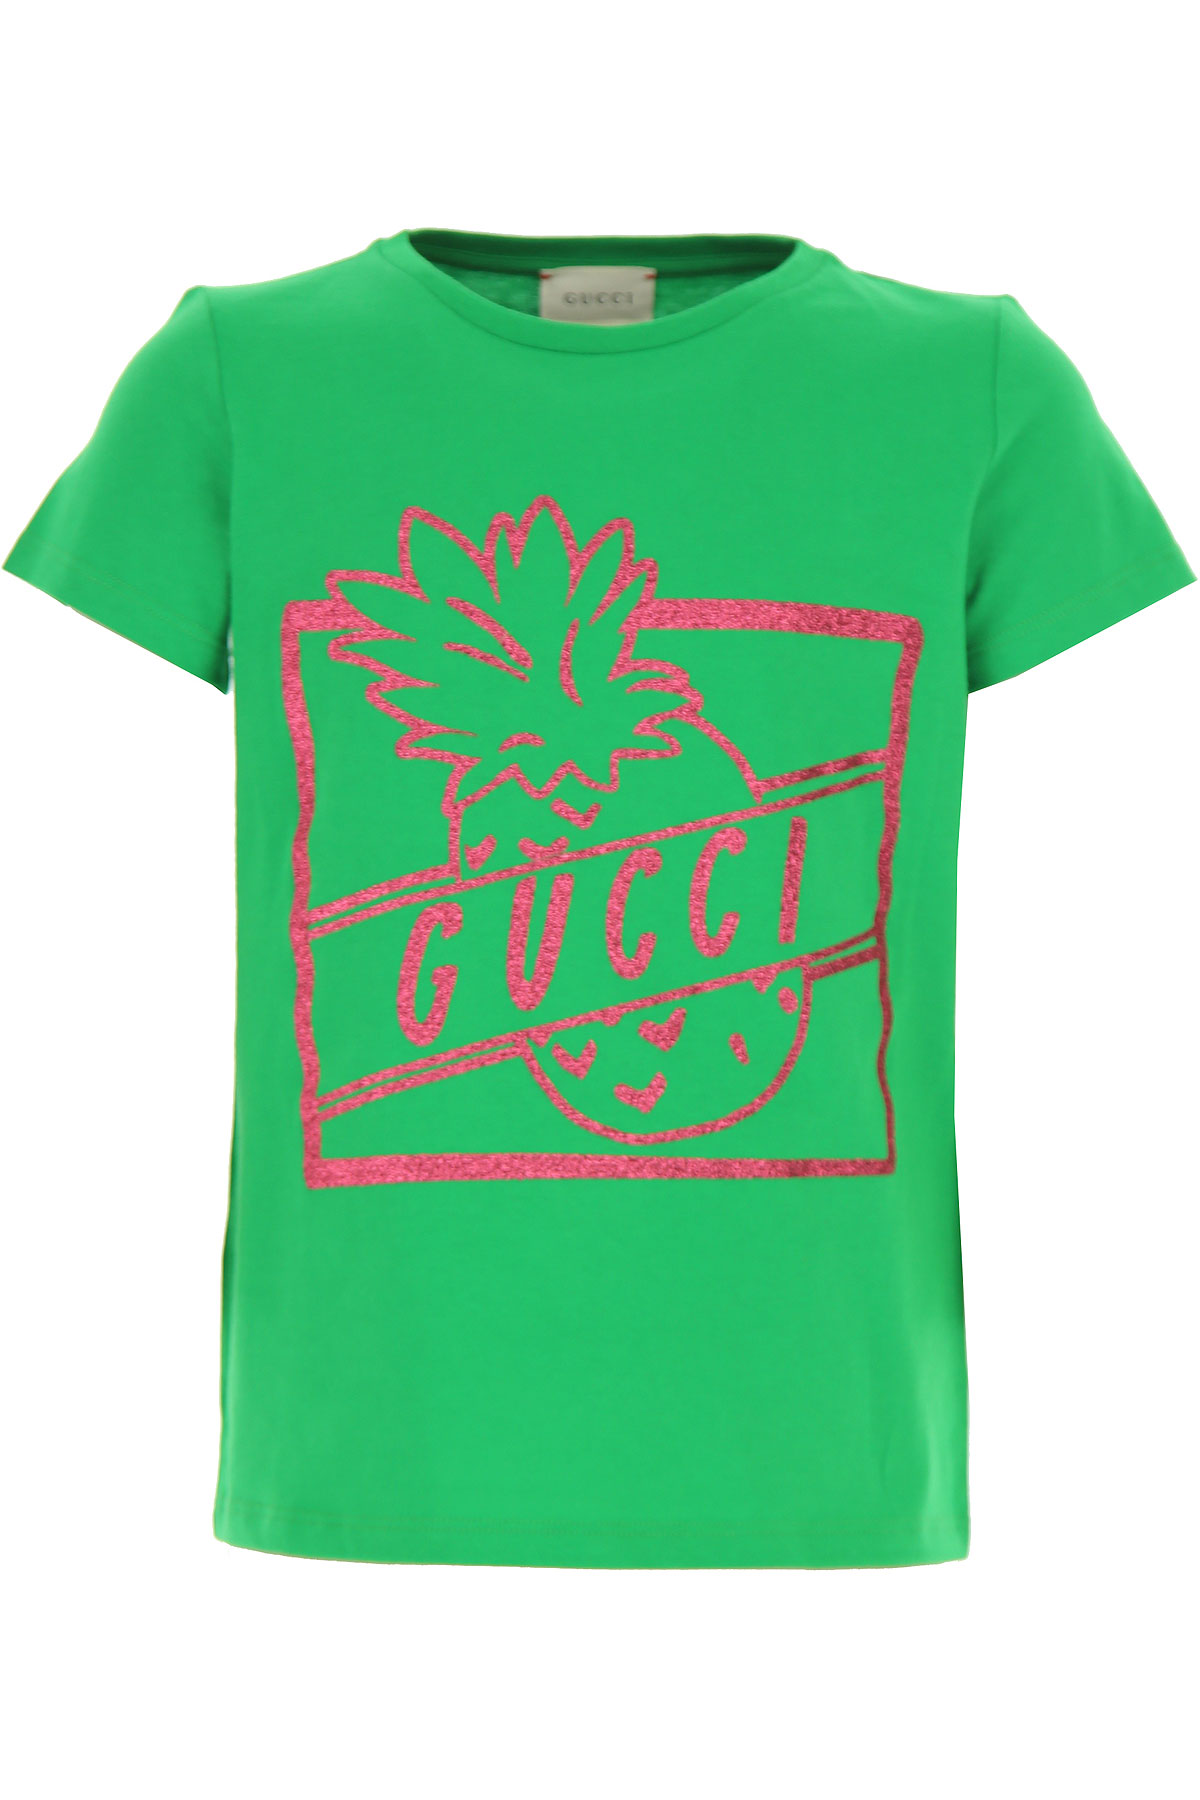 Gucci Kinder T-Shirt für Mädchen Günstig im Sale, Grün, Baumwolle, 2017, 10Y 4Y 6Y 8Y